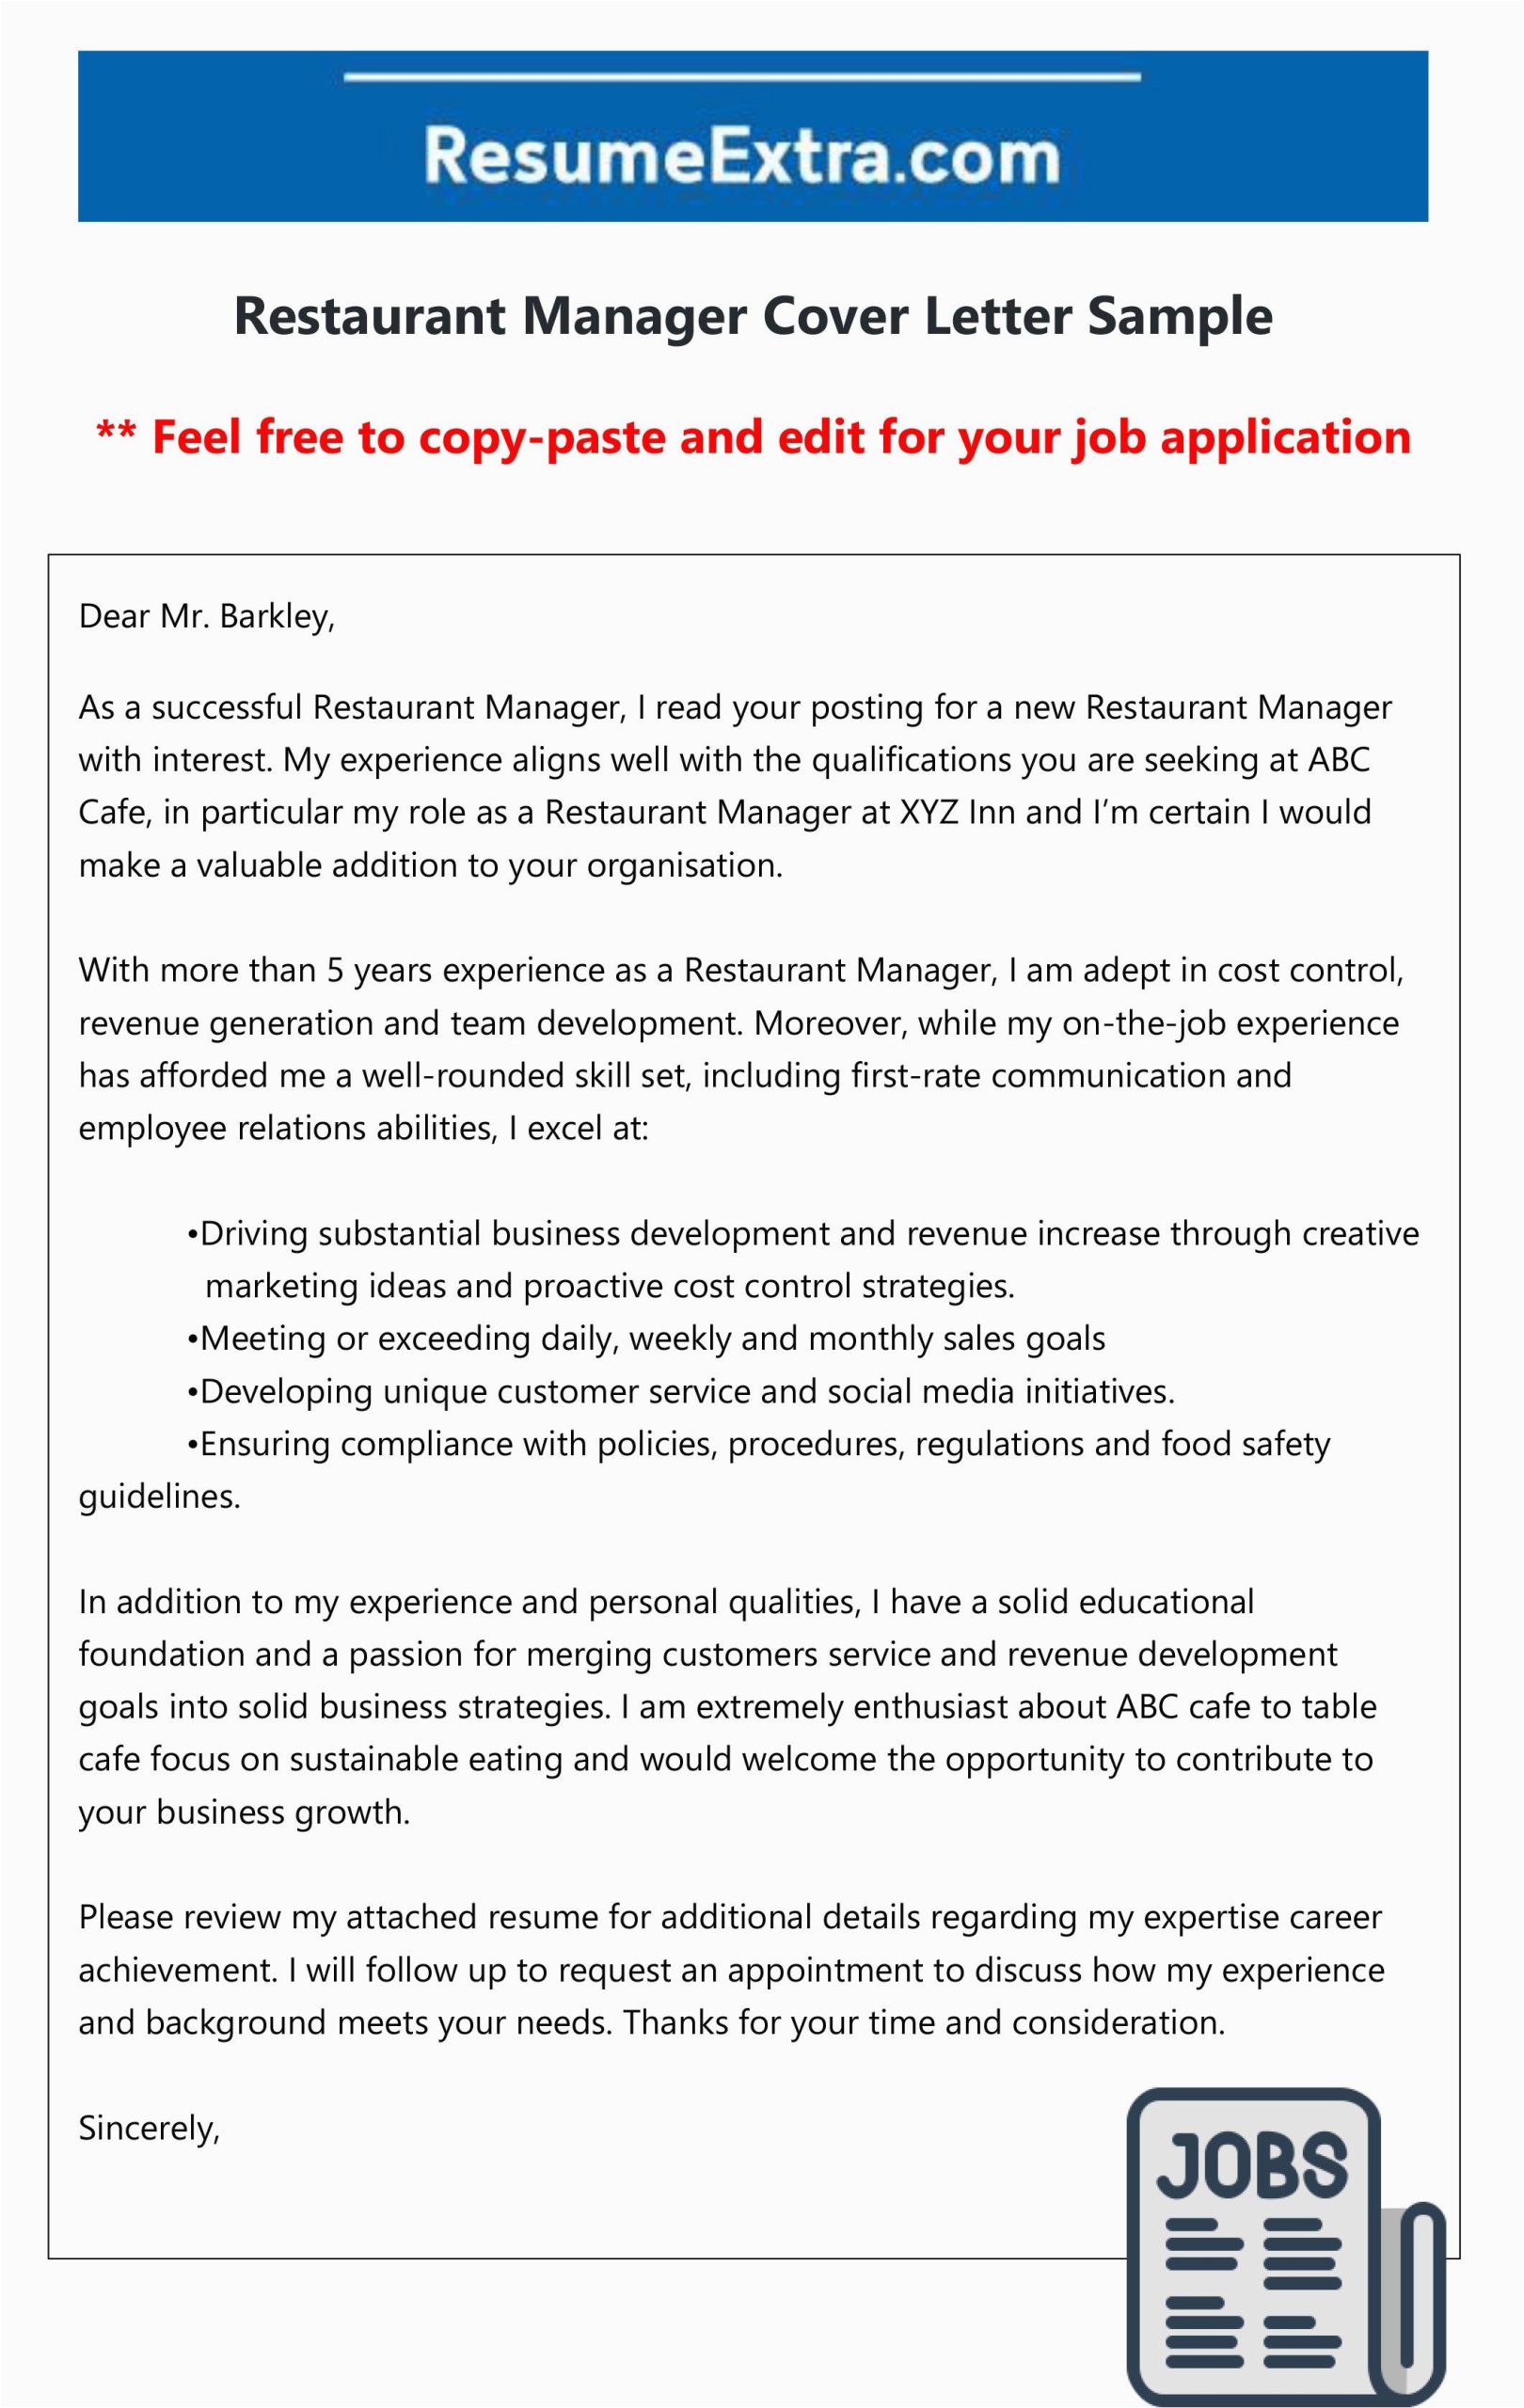 Sample Resume Cover Letter for Restaurant Manager Free Restaurant Manager Cover Letter